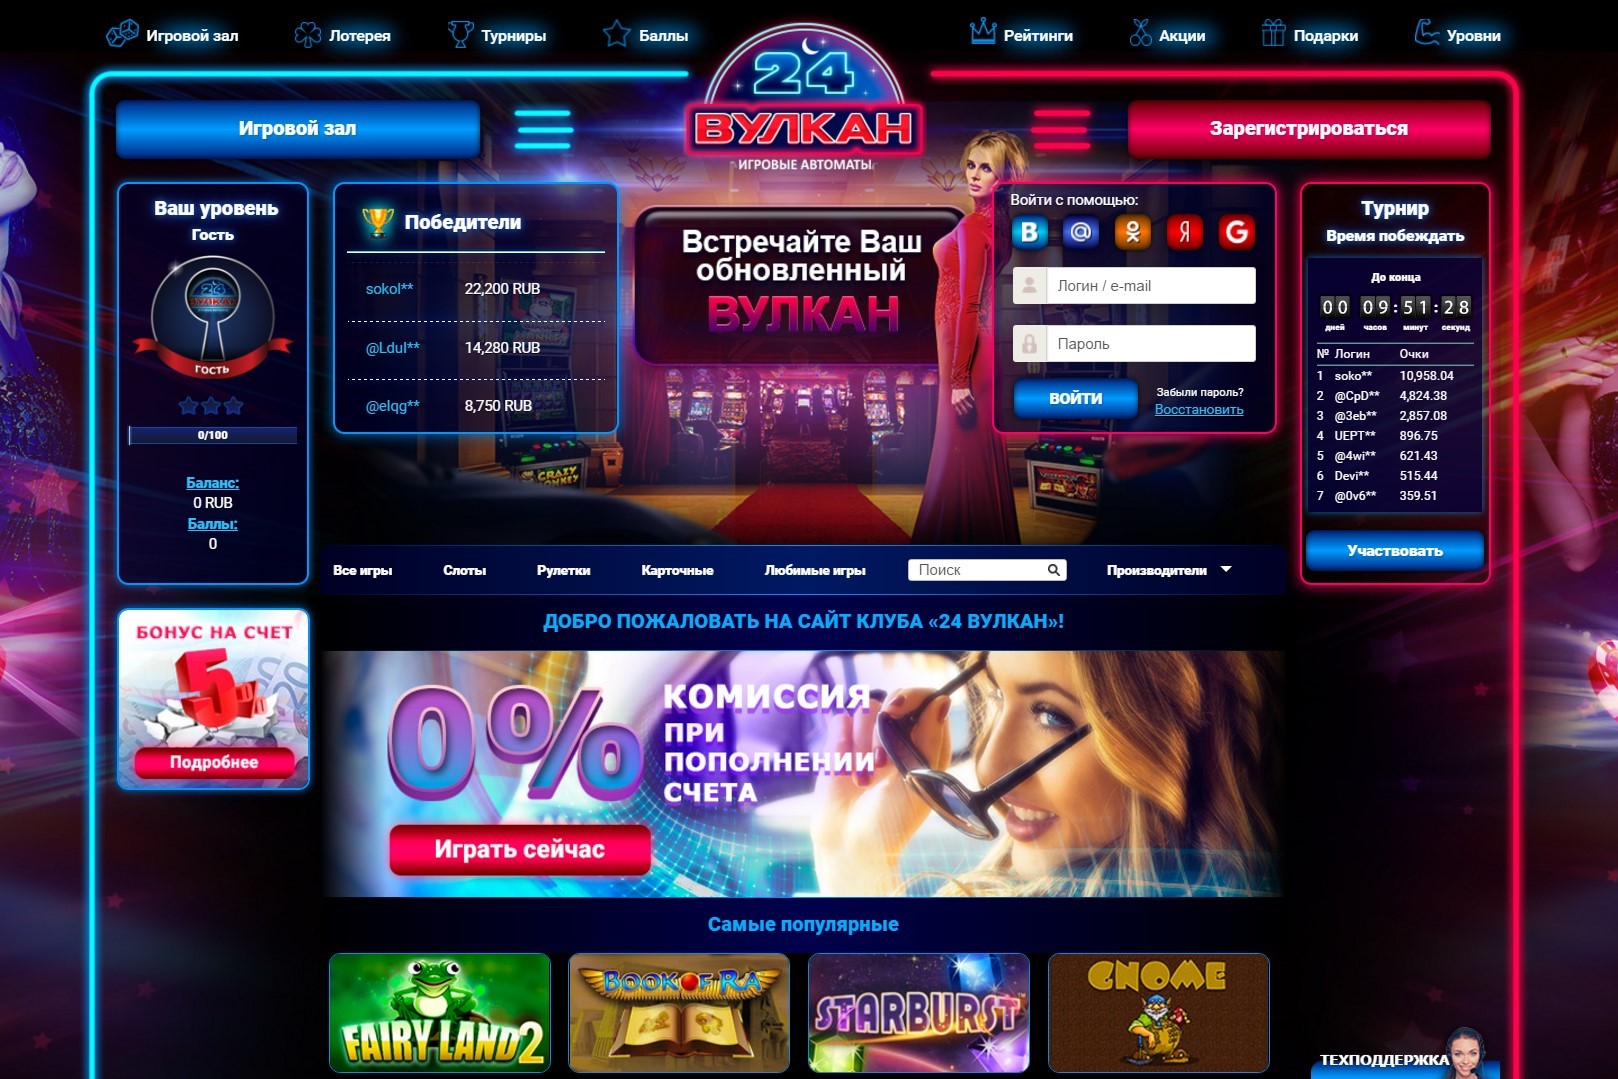 Вулкан 24 официальный сайт игровых автоматов на деньги с выводом денег на карту сбербанка покердом камбенац призовая комбинация